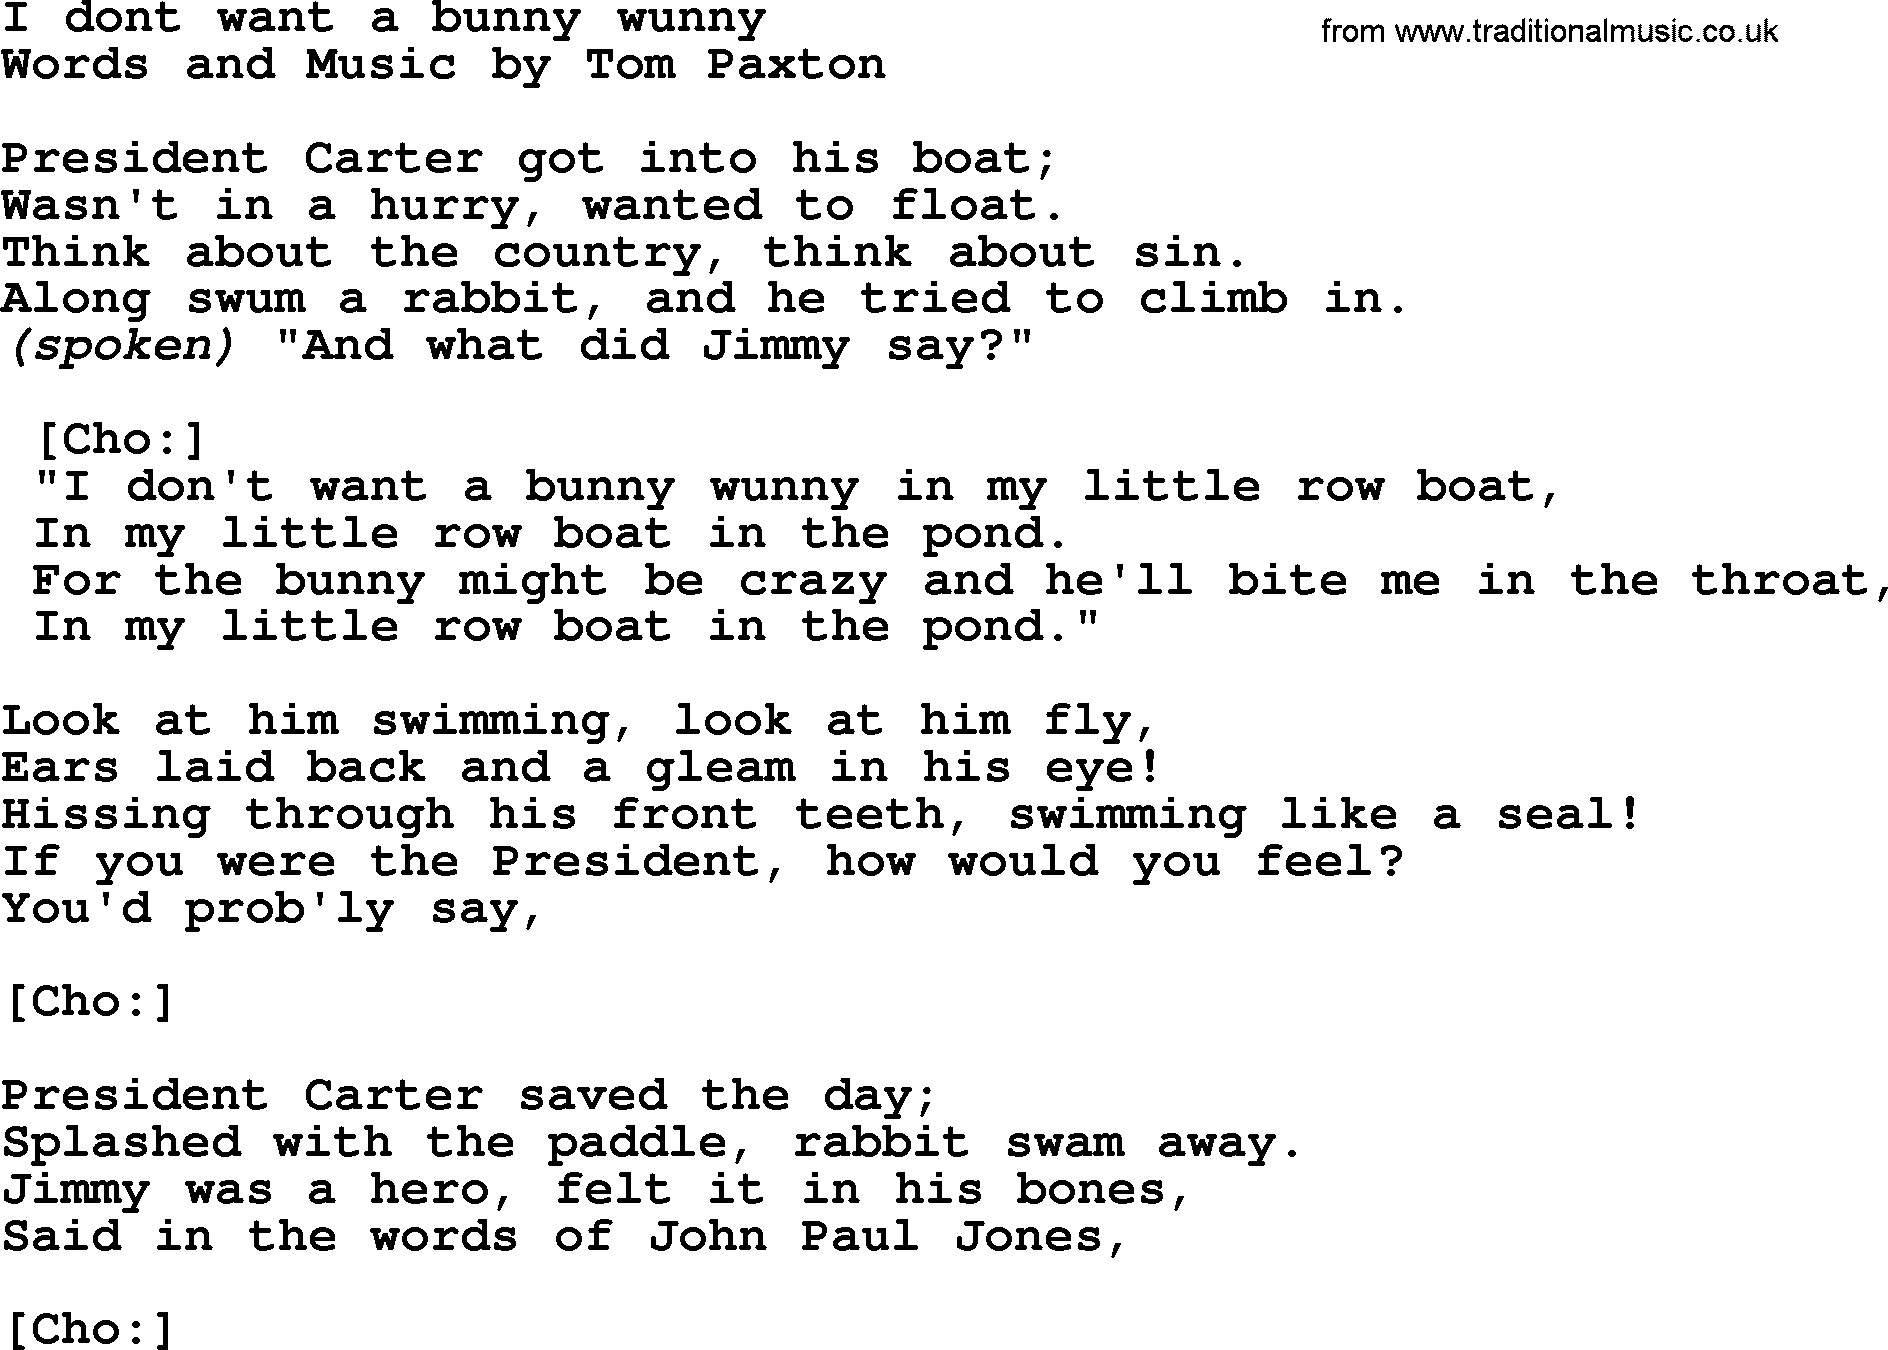 Tom Paxton song: I Dont Want A Bunny Wunny, lyrics